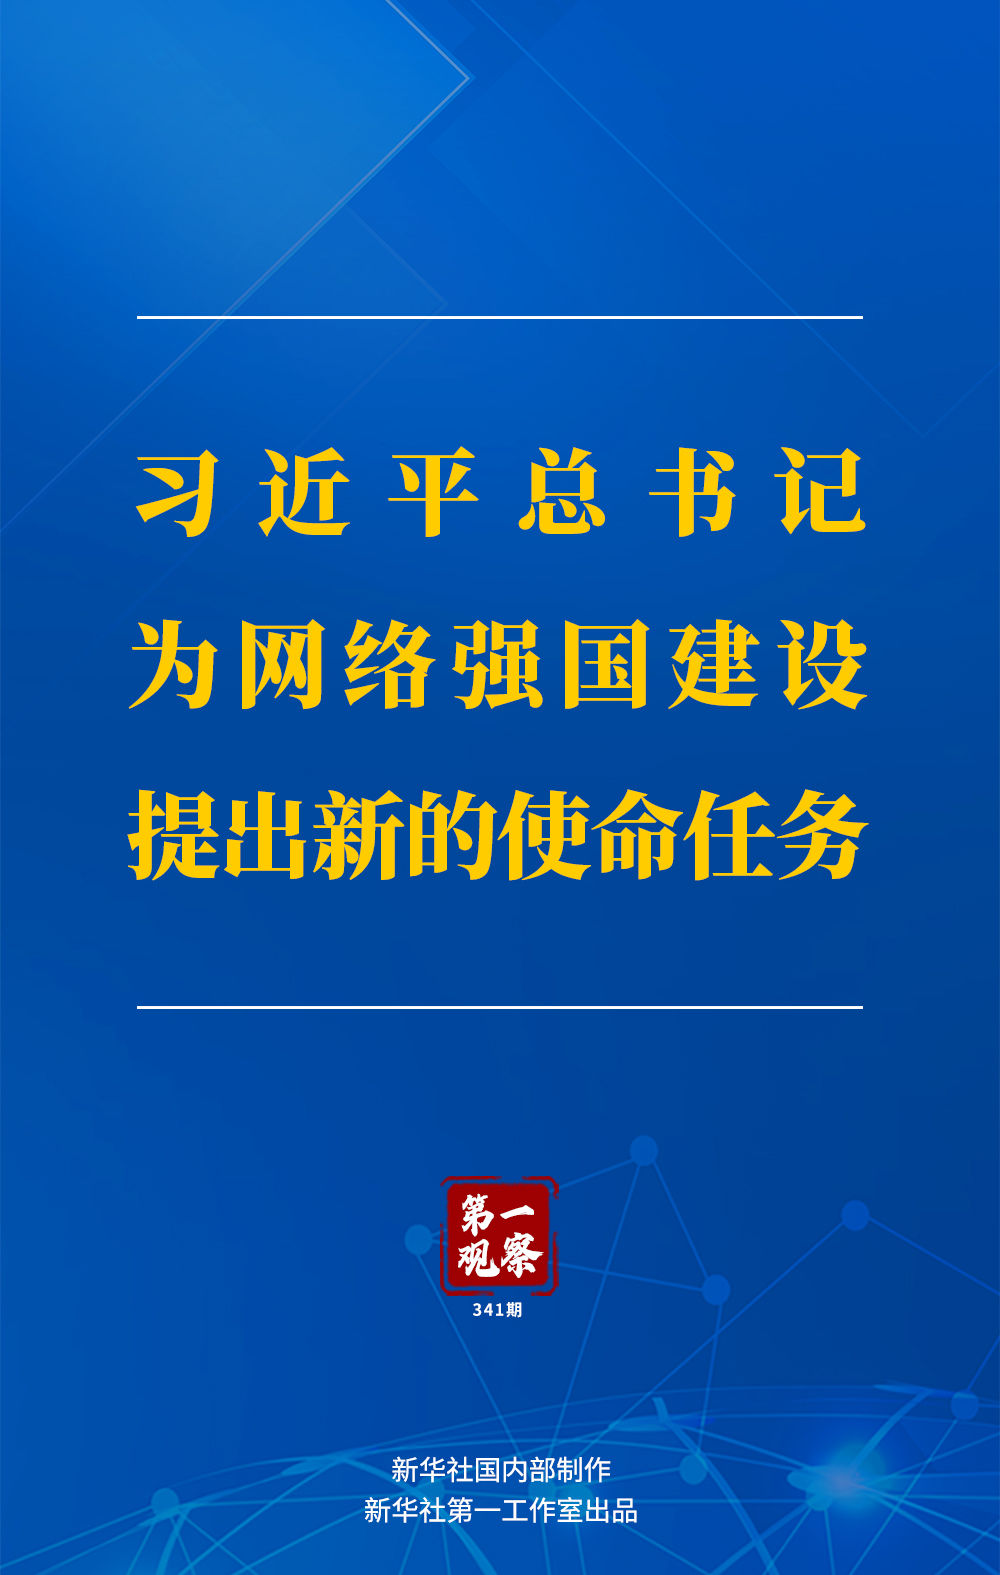 第一观察丨习近平总书记为网络强国建设提出新的使命任务